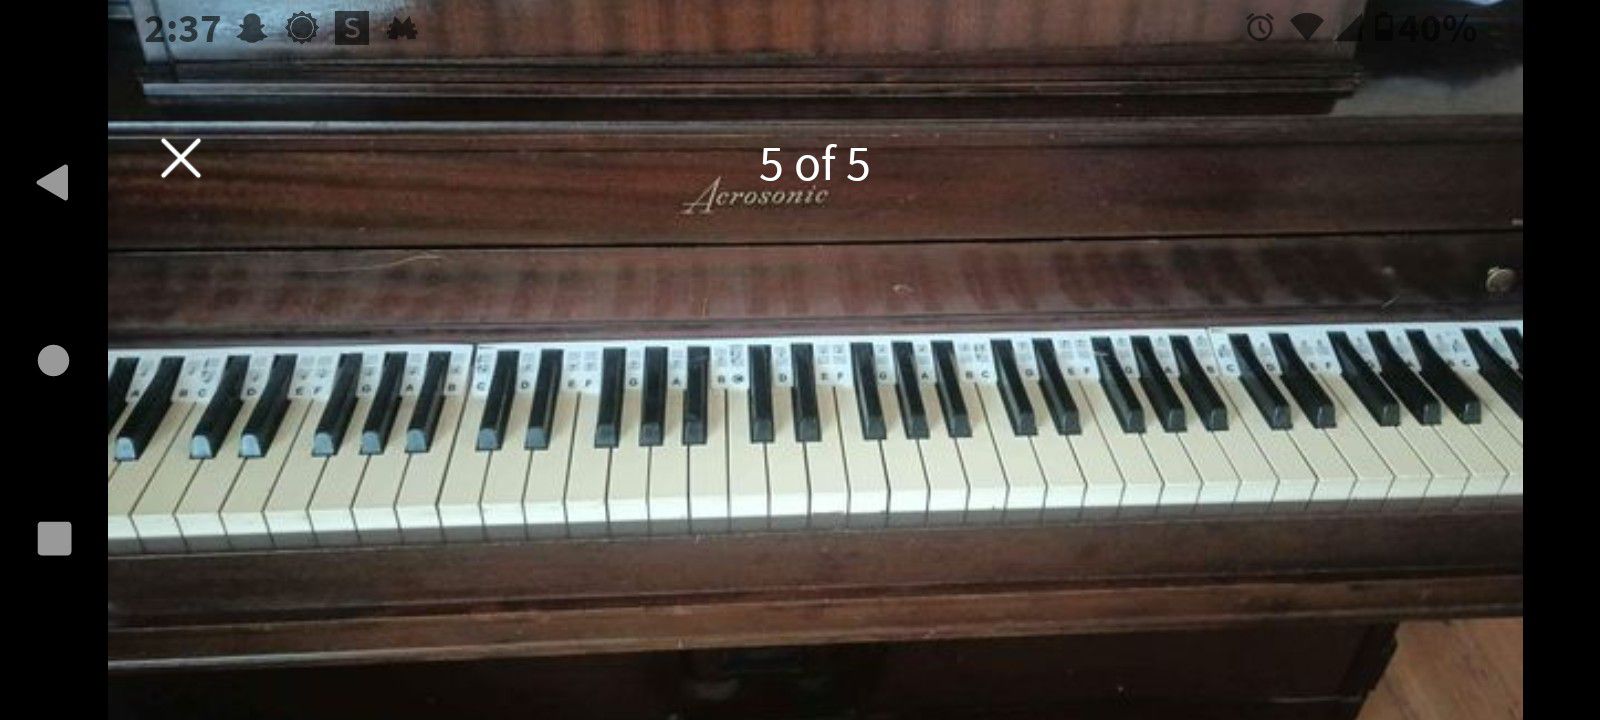 Gorgeous Vintage Acrosonic Piano 